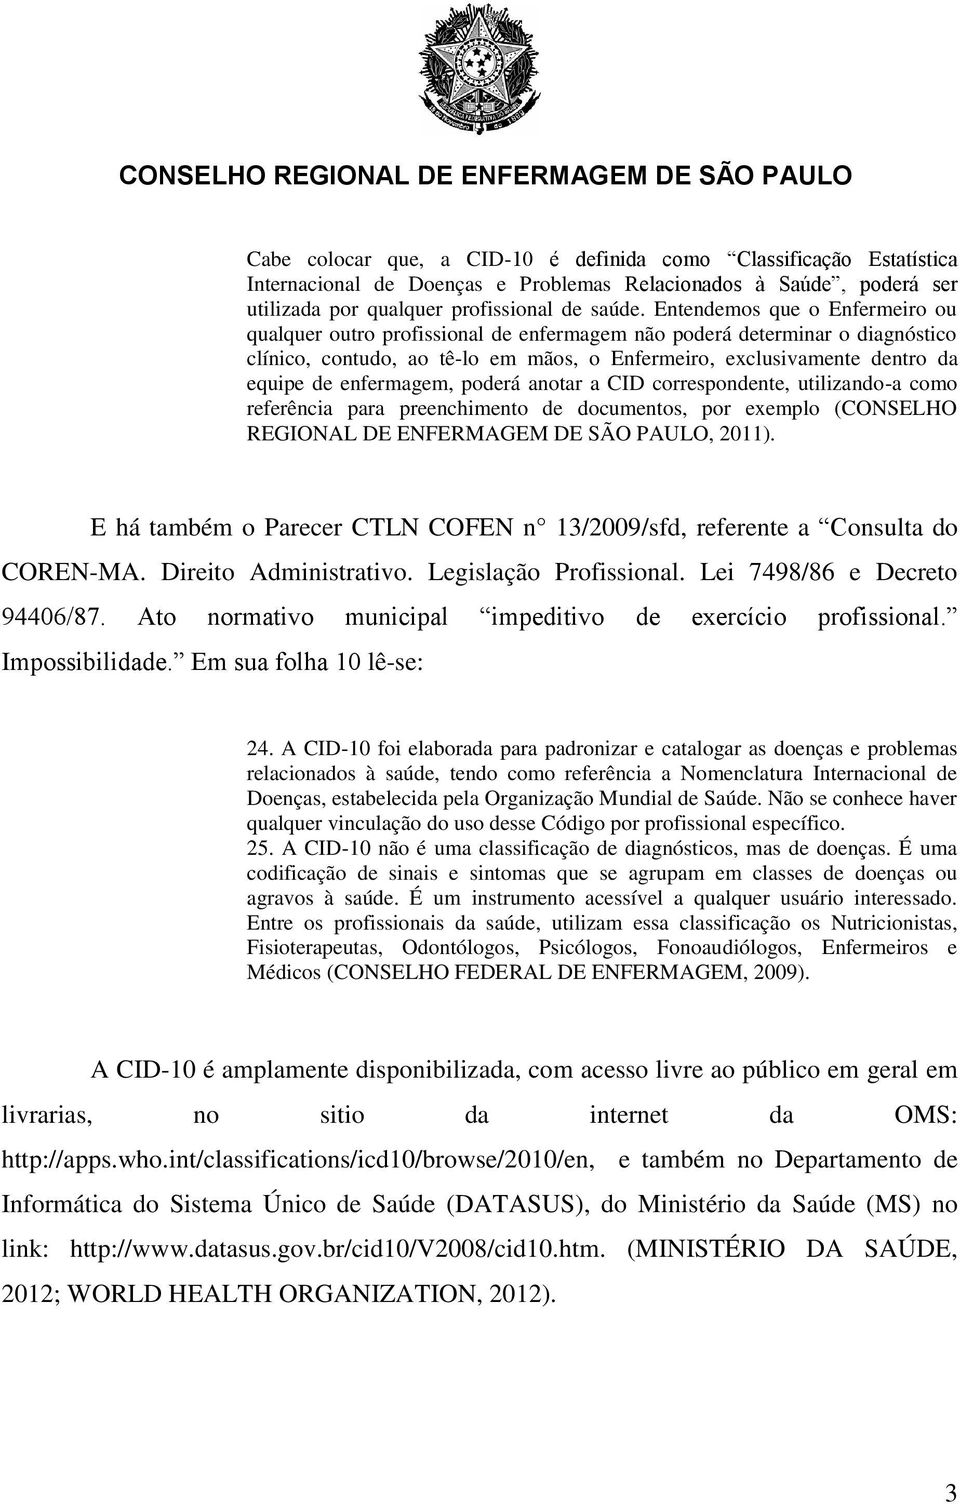 enfermagem, poderá anotar a CID correspondente, utilizando-a como referência para preenchimento de documentos, por exemplo (CONSELHO REGIONAL DE ENFERMAGEM DE SÃO PAULO, 2011).